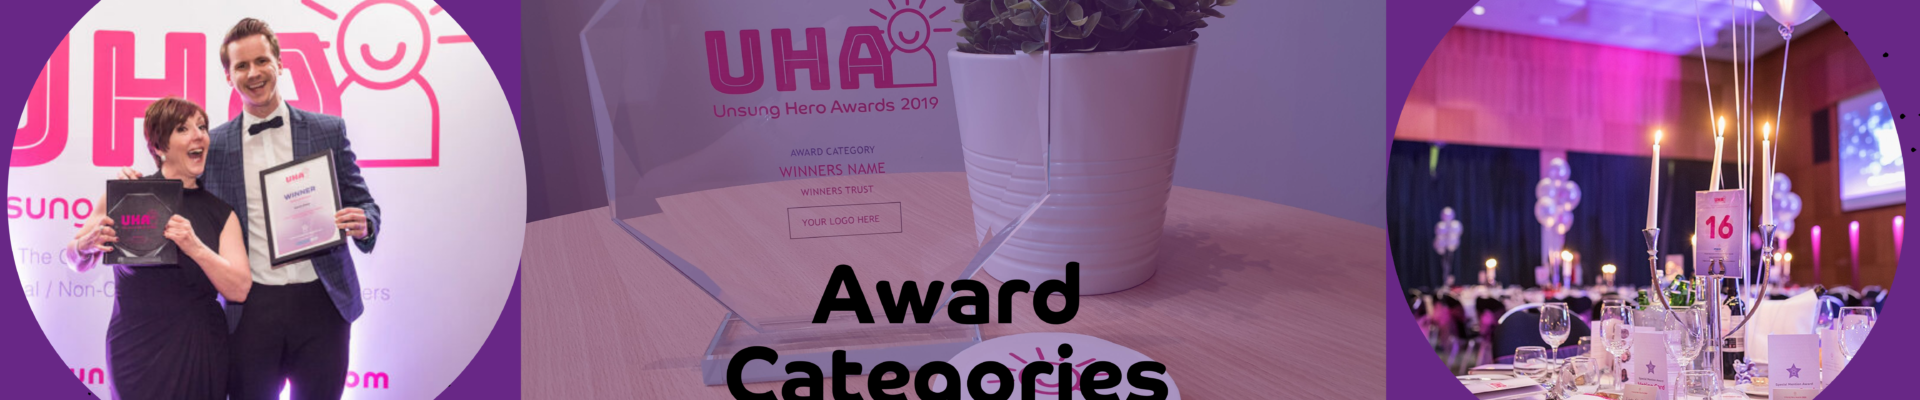 Award Categories old | Unsung Hero Awards